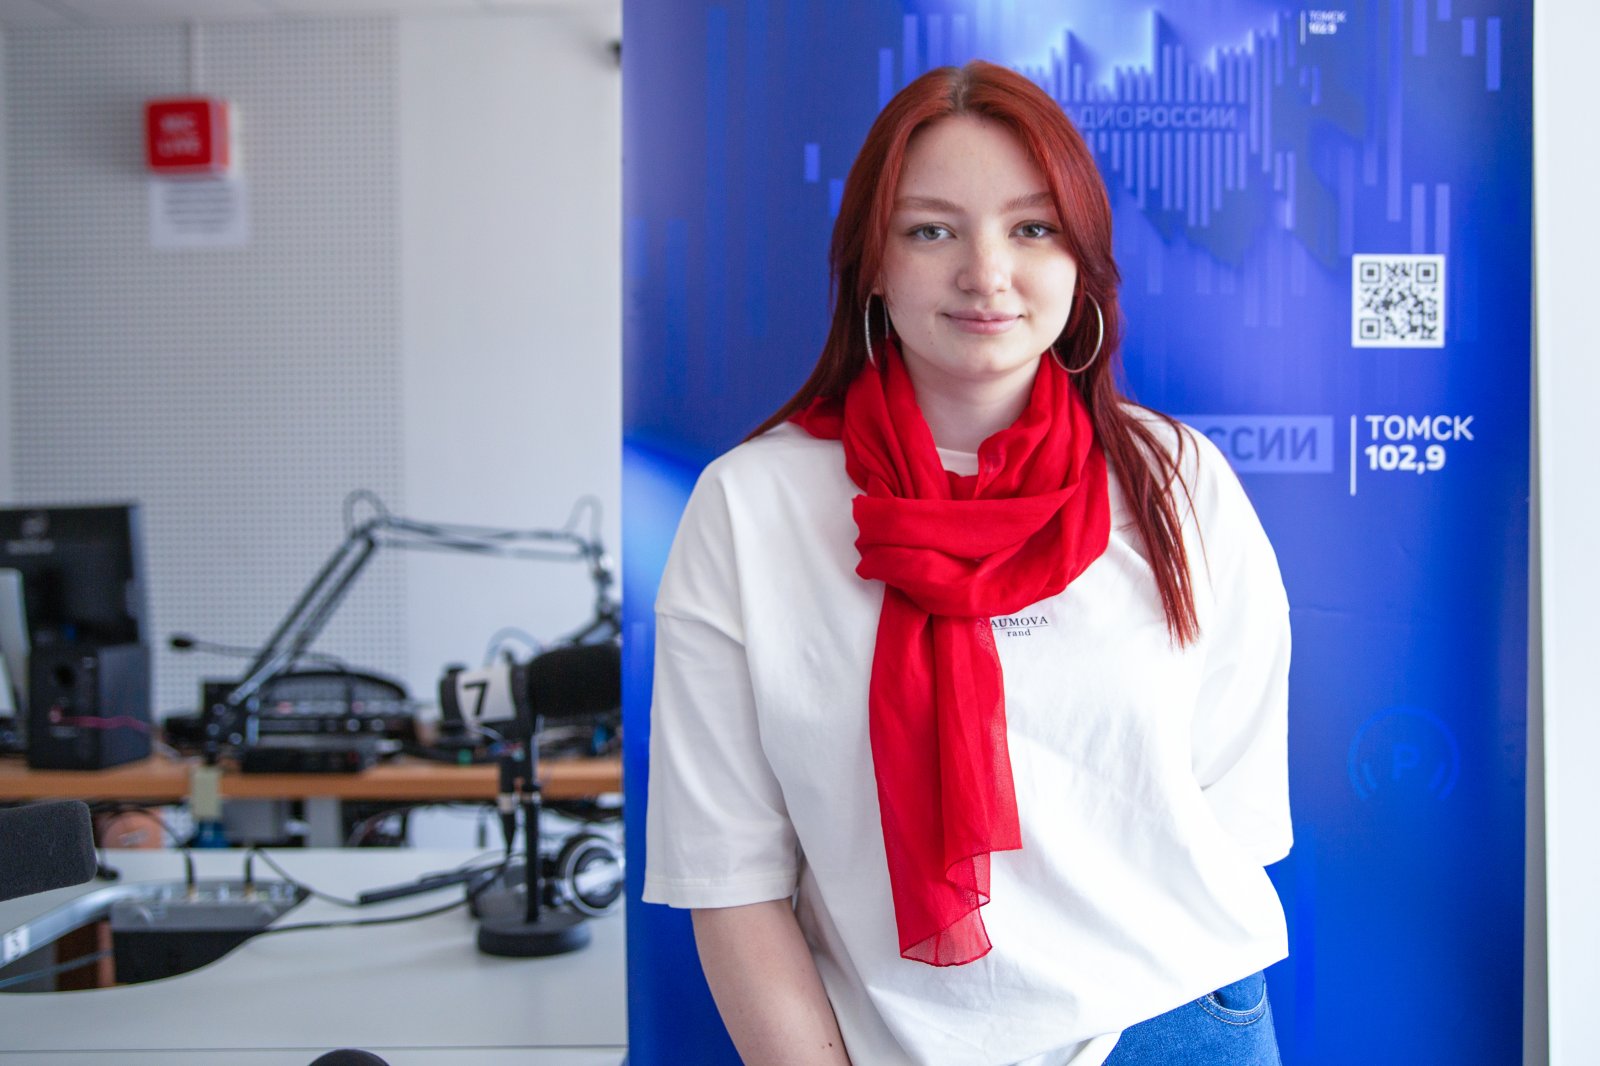 Анастасия Изидерова, корреспондент службы радиовещания ГТРК "Томск"